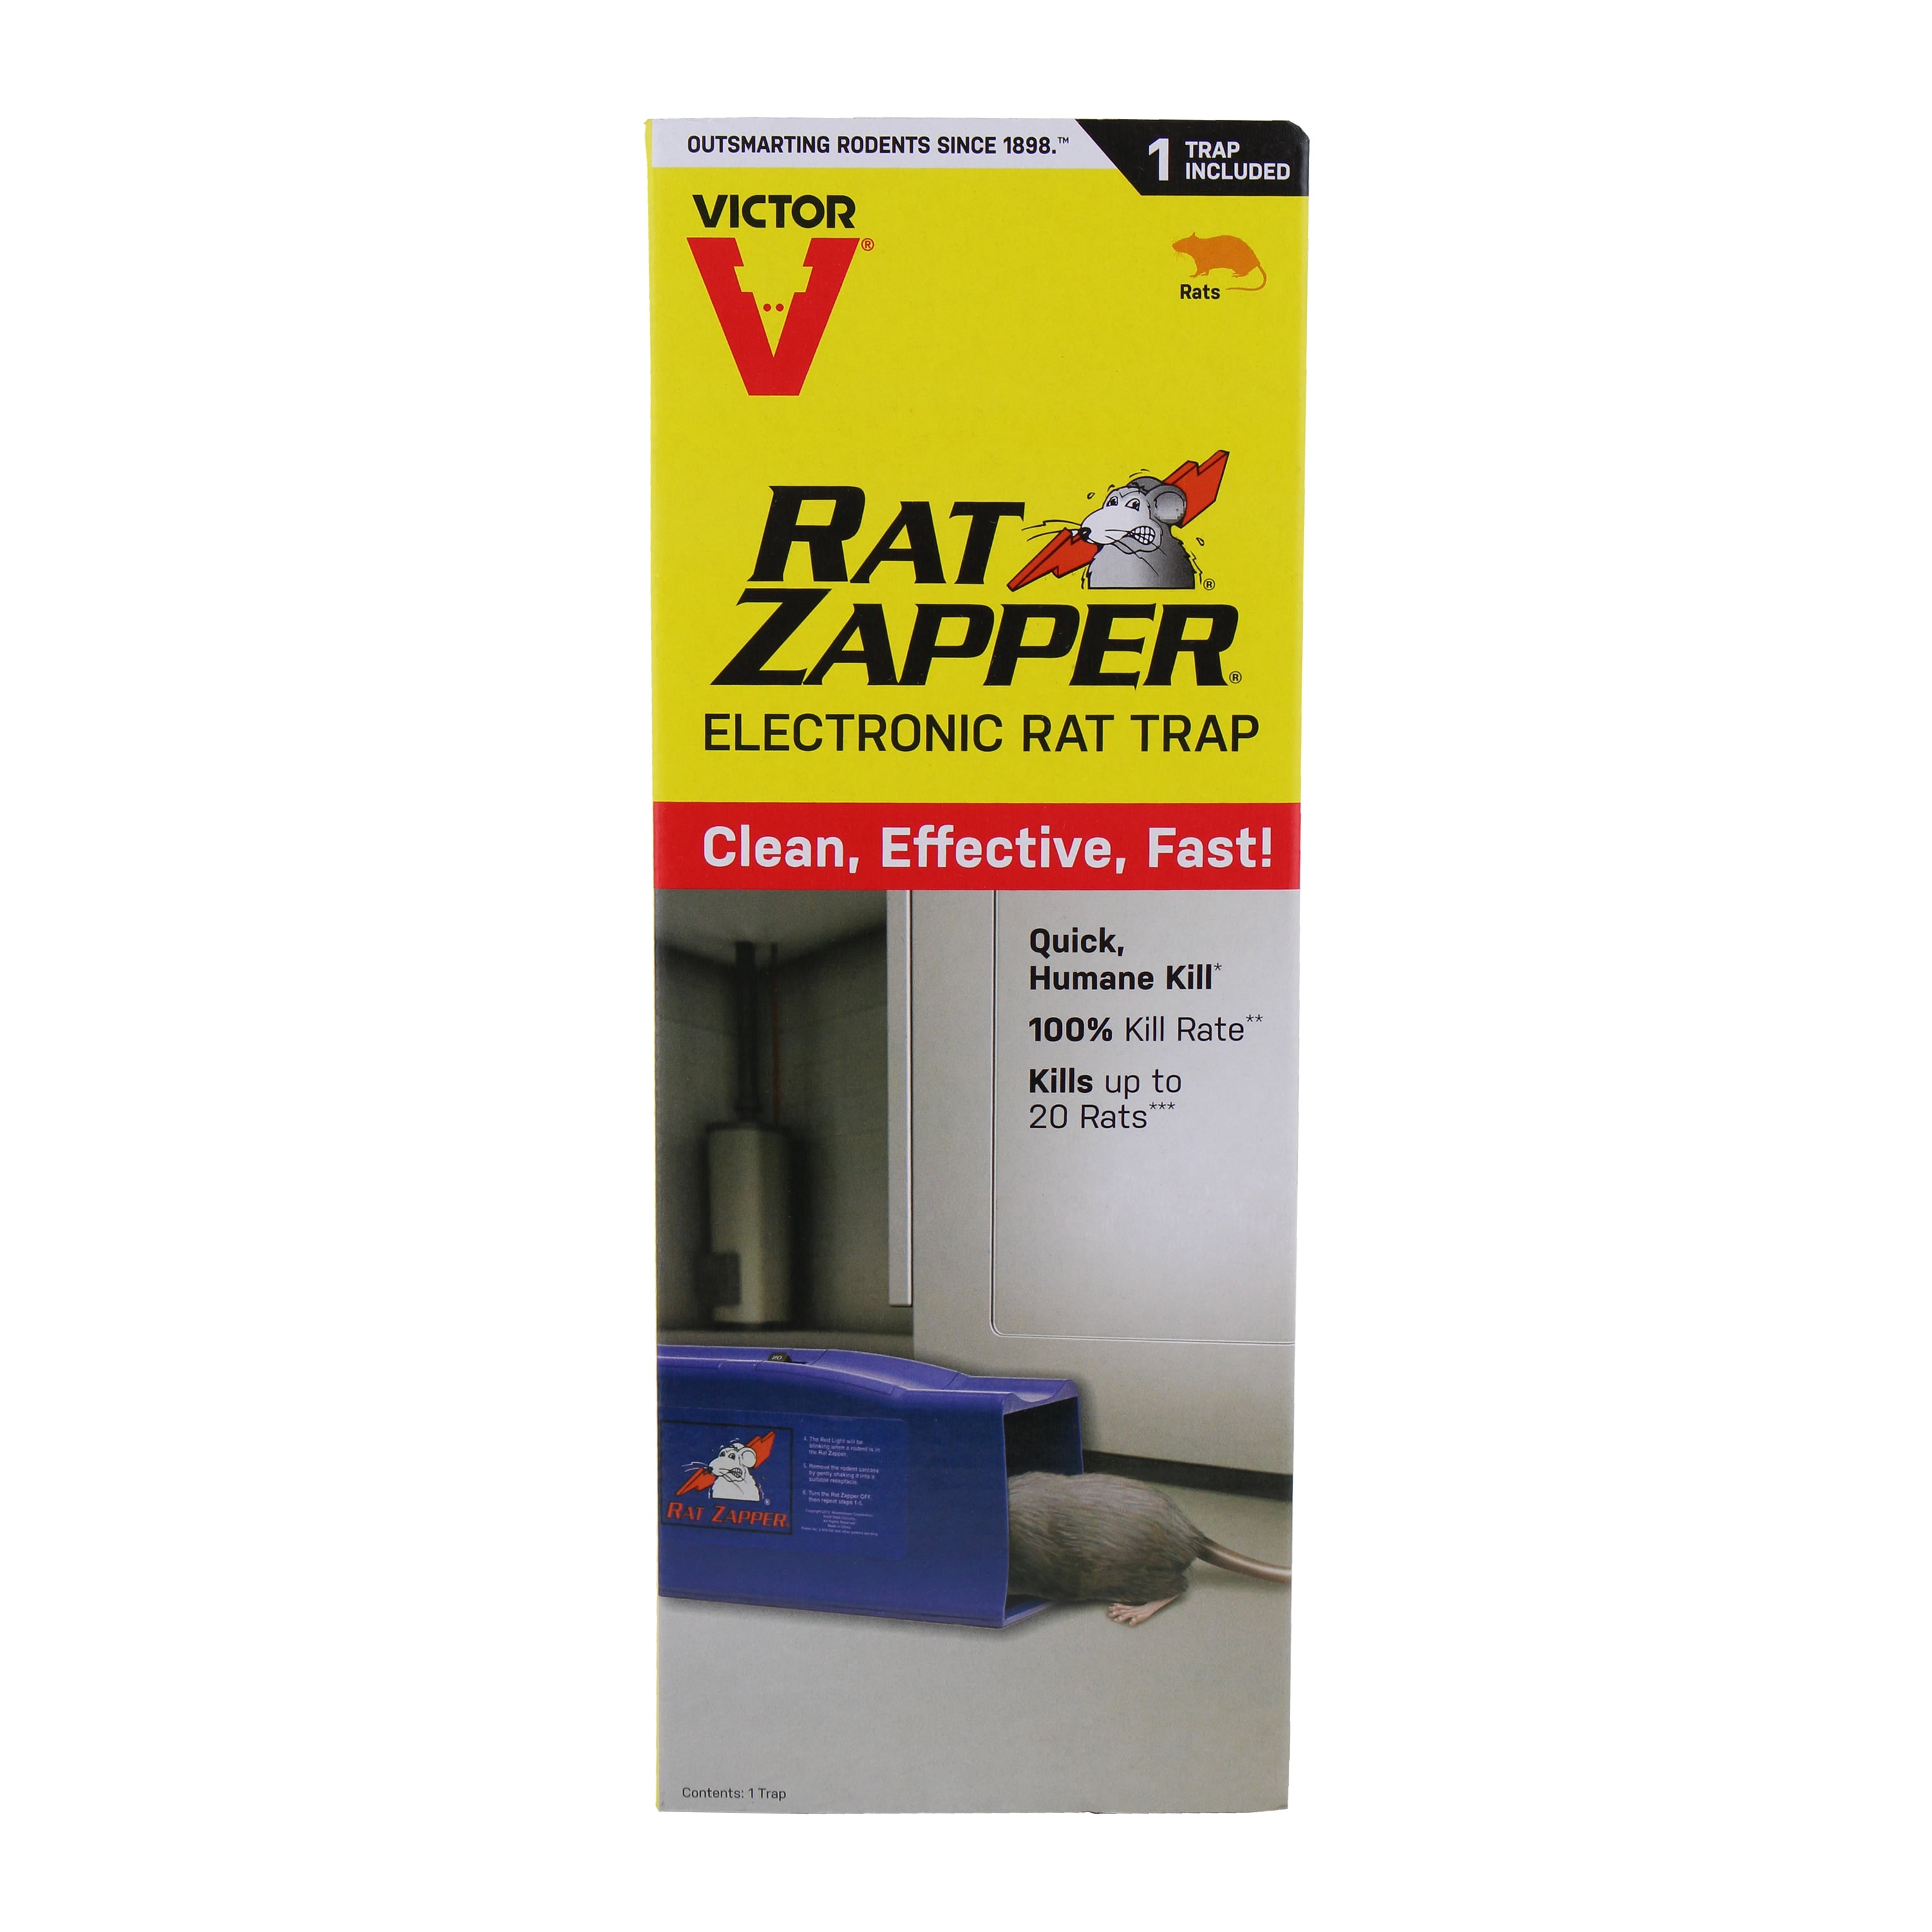 Rat Zapper® Classic Rat Trap, Model BRZC001-2